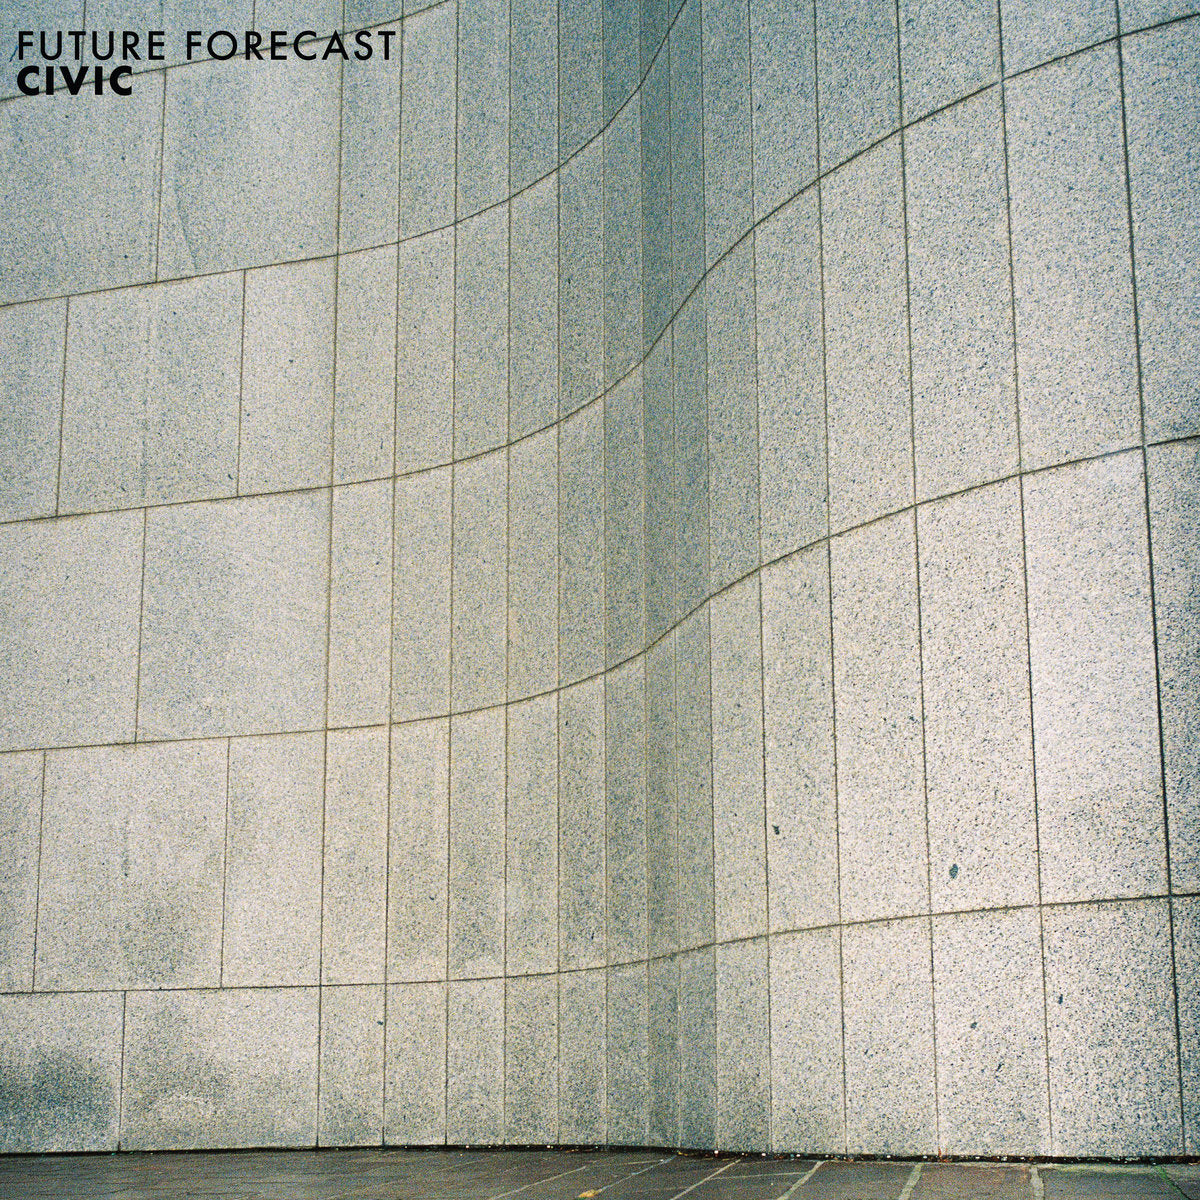 Civic, "Future Forecast" (White Vinyl)